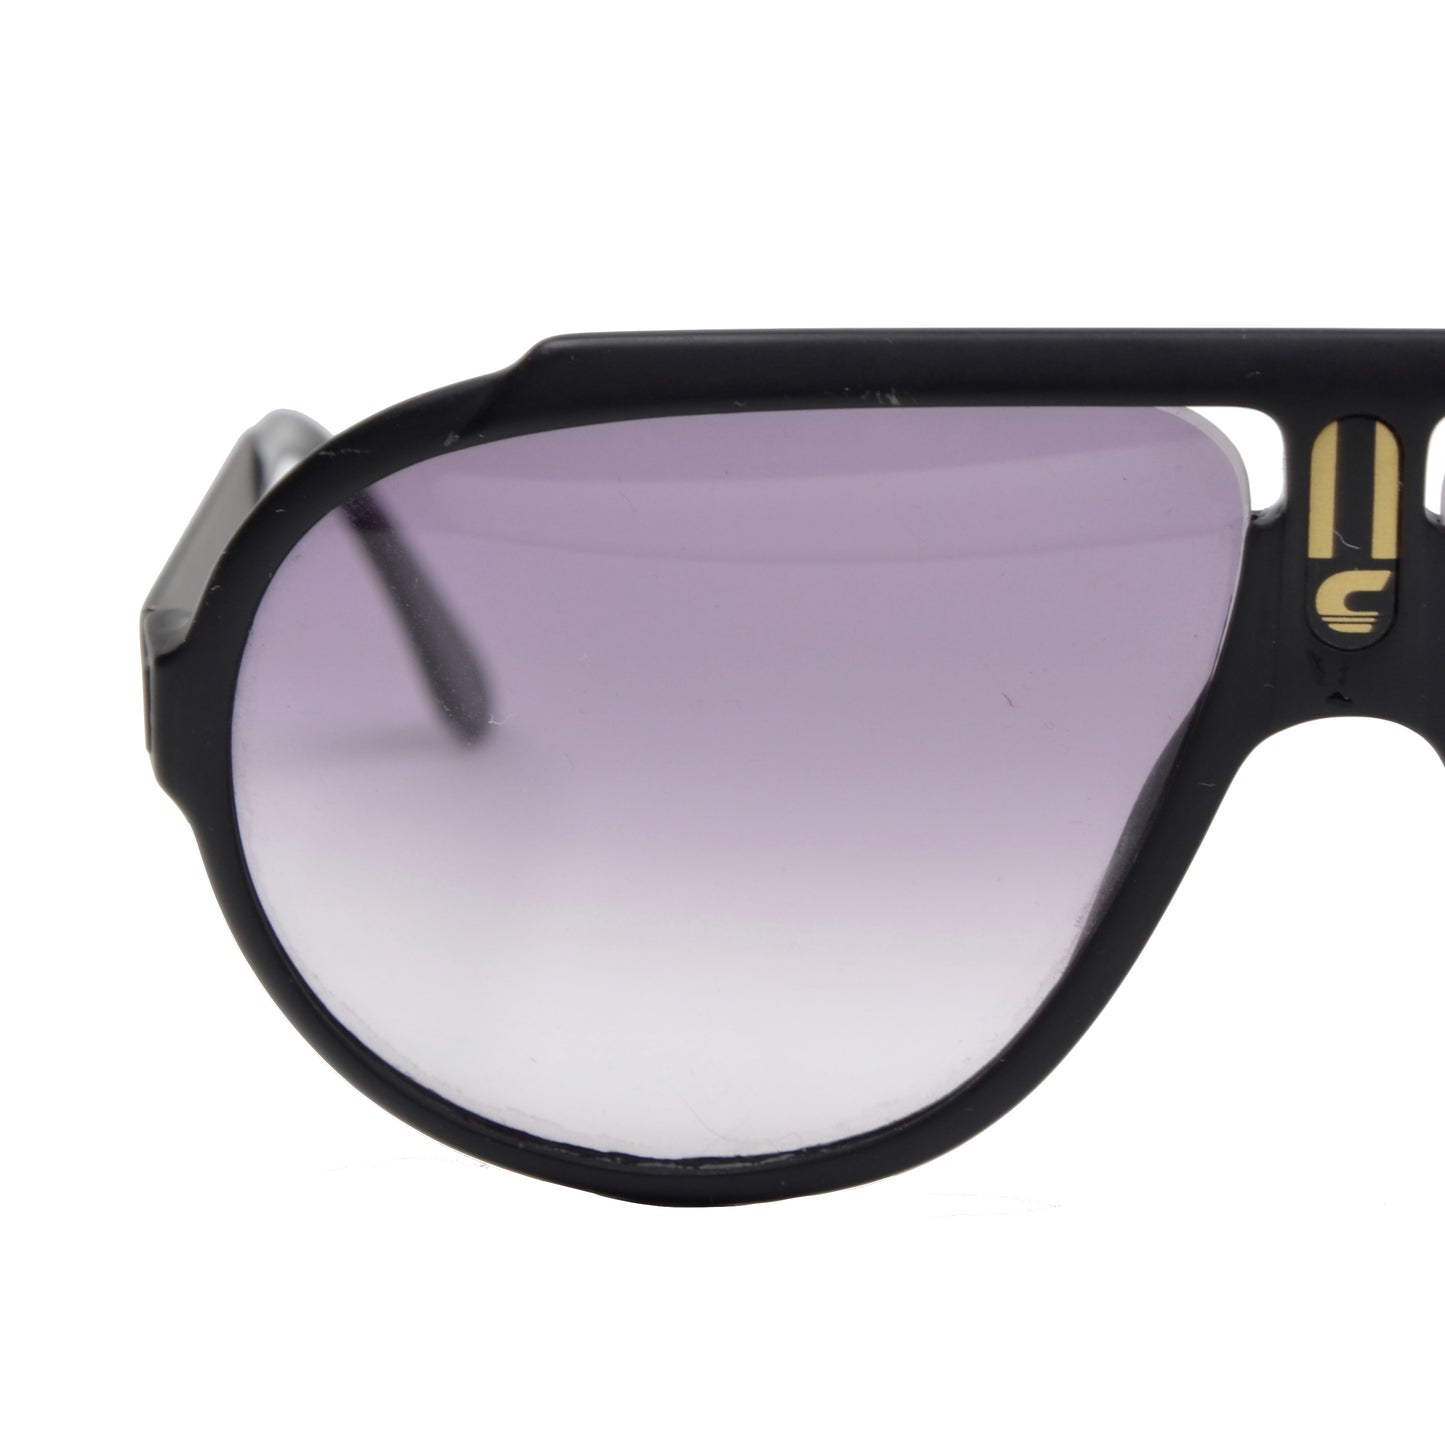 Vintage Carrera 5512 Miami Vice Sunglasses - Black